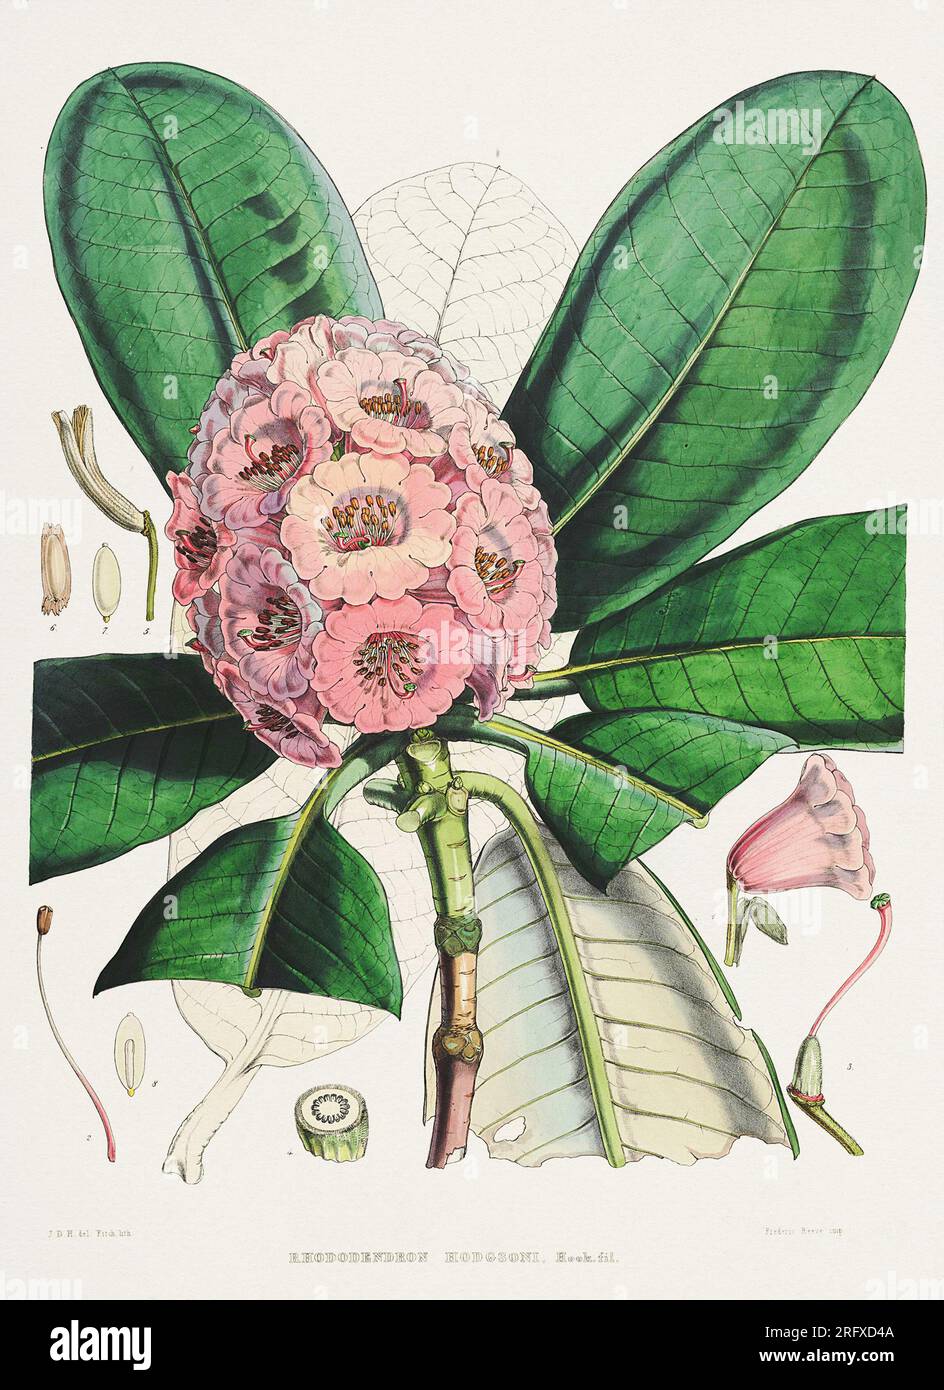 Ilustración de flores de rododendro del Himalaya, ca. 1849 Foto de stock